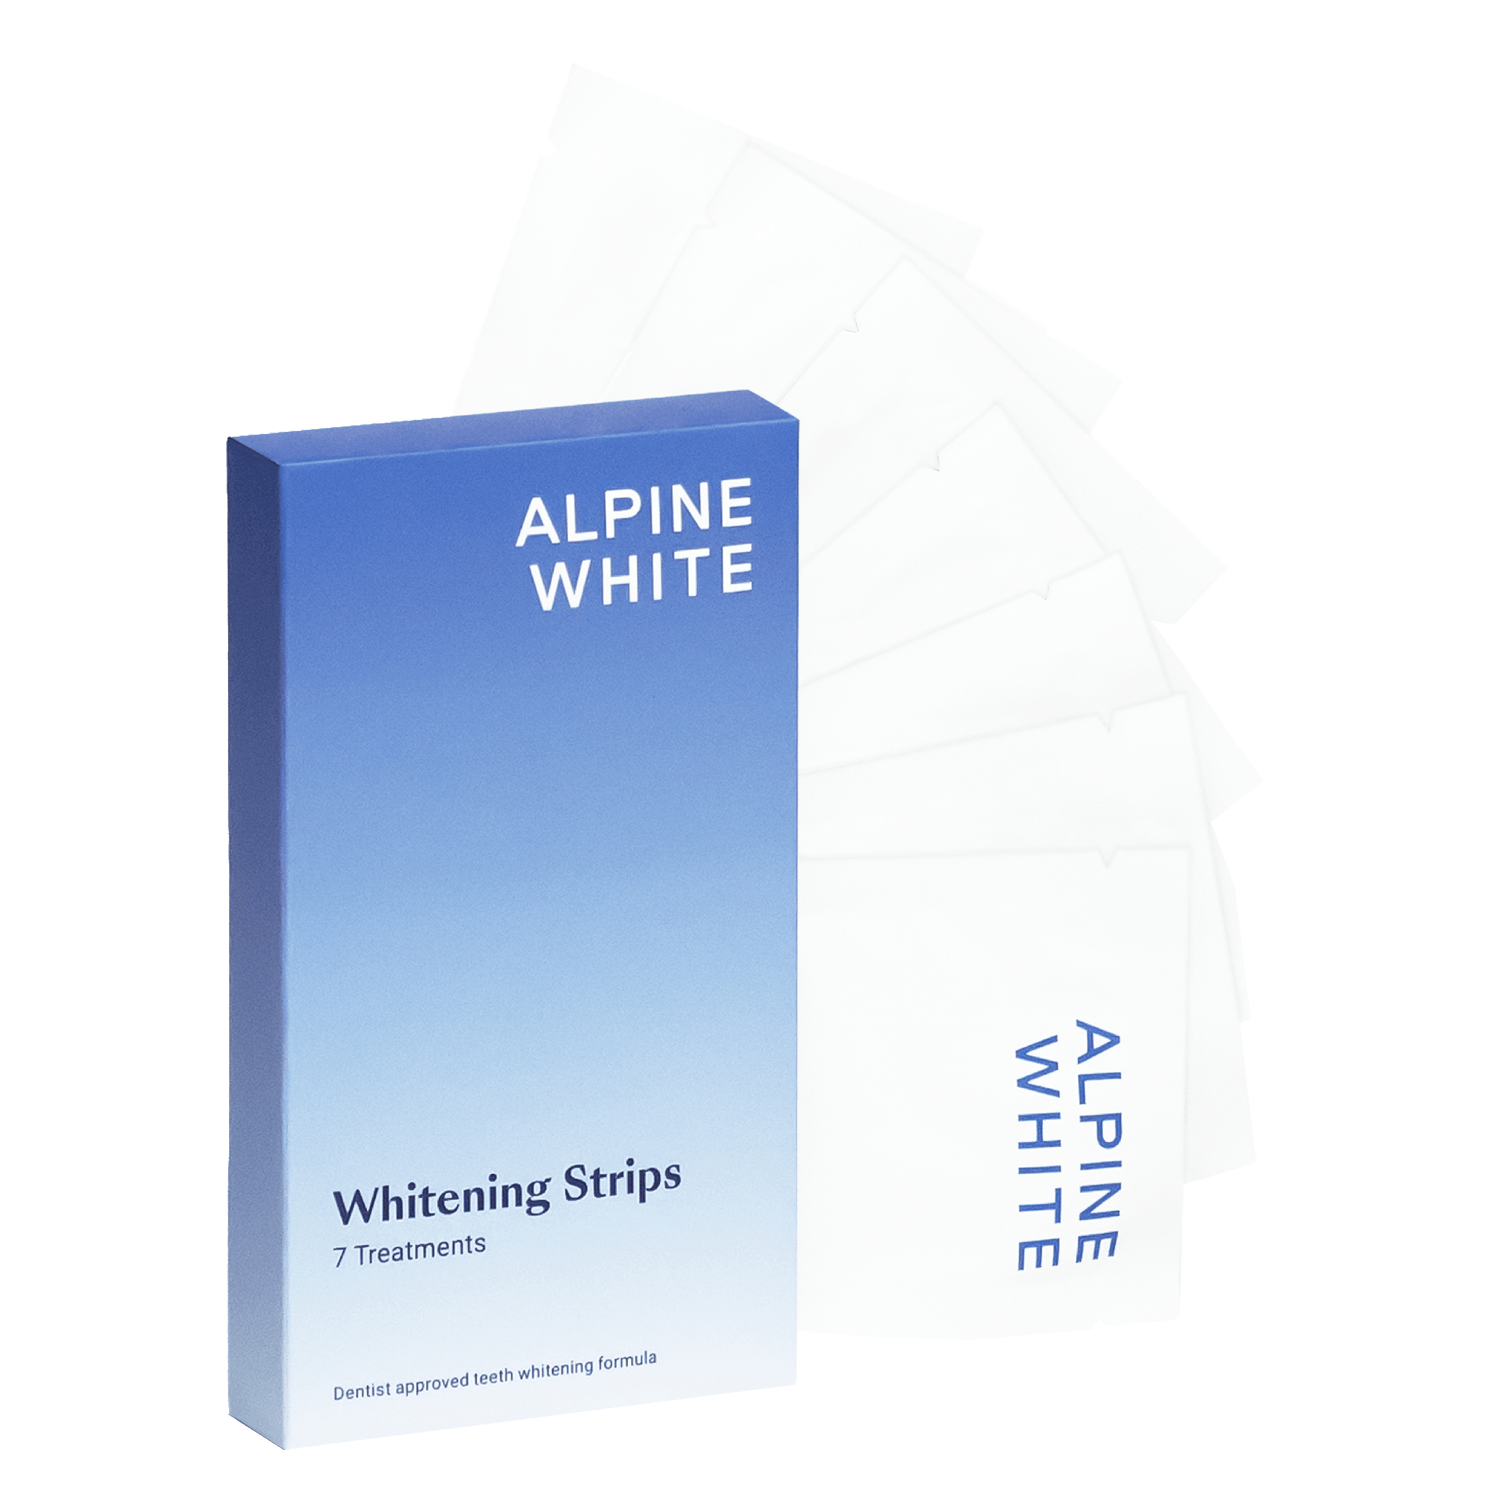 Produktbild von ALPINE WHITE - Whitening Strips